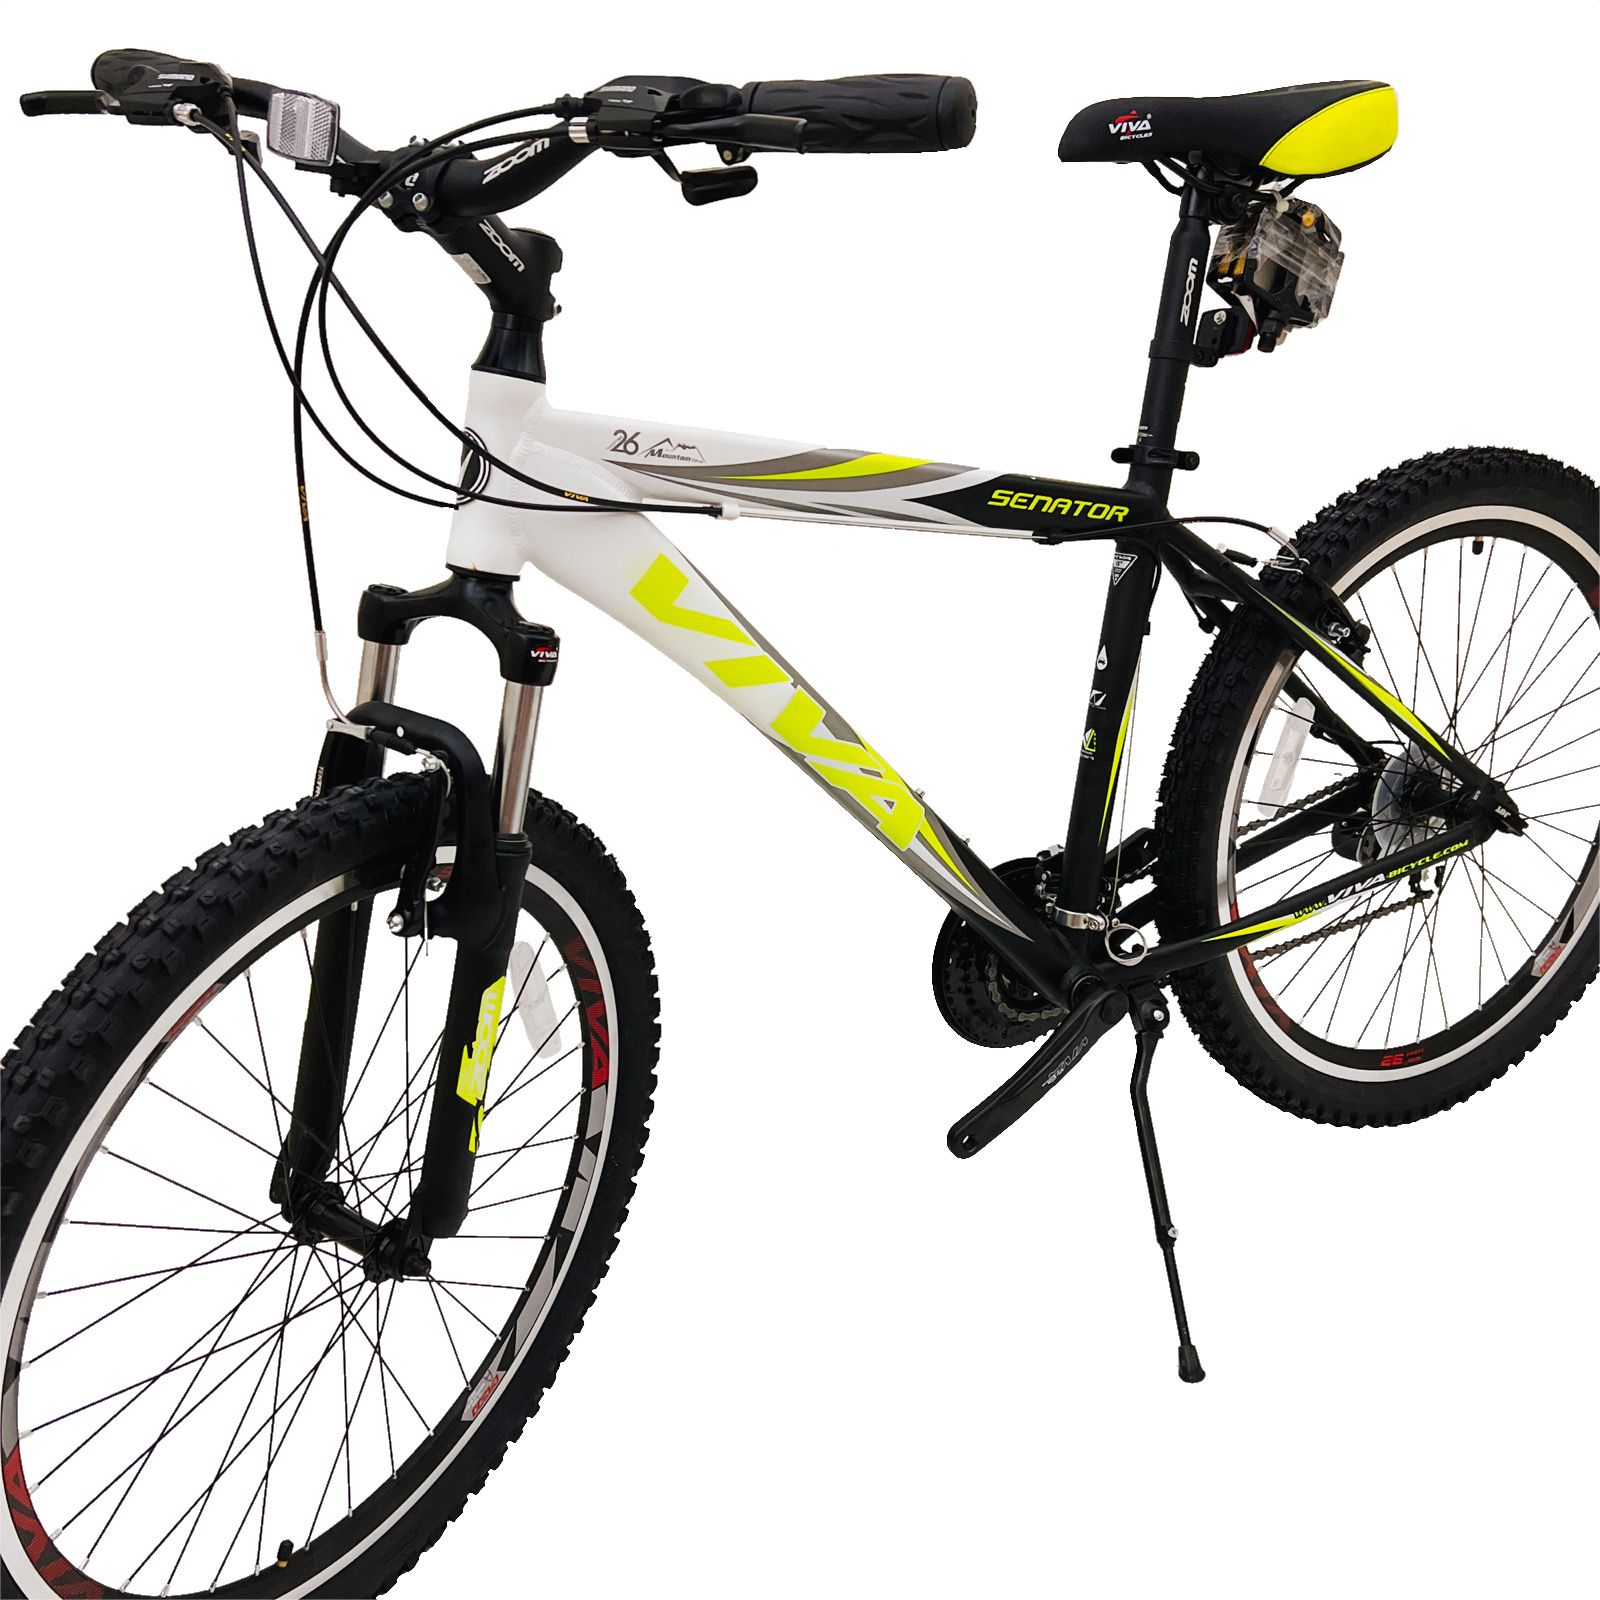 دوچرخه کوهستان ویوا مدل SENATOR سایز 26 -  - 11